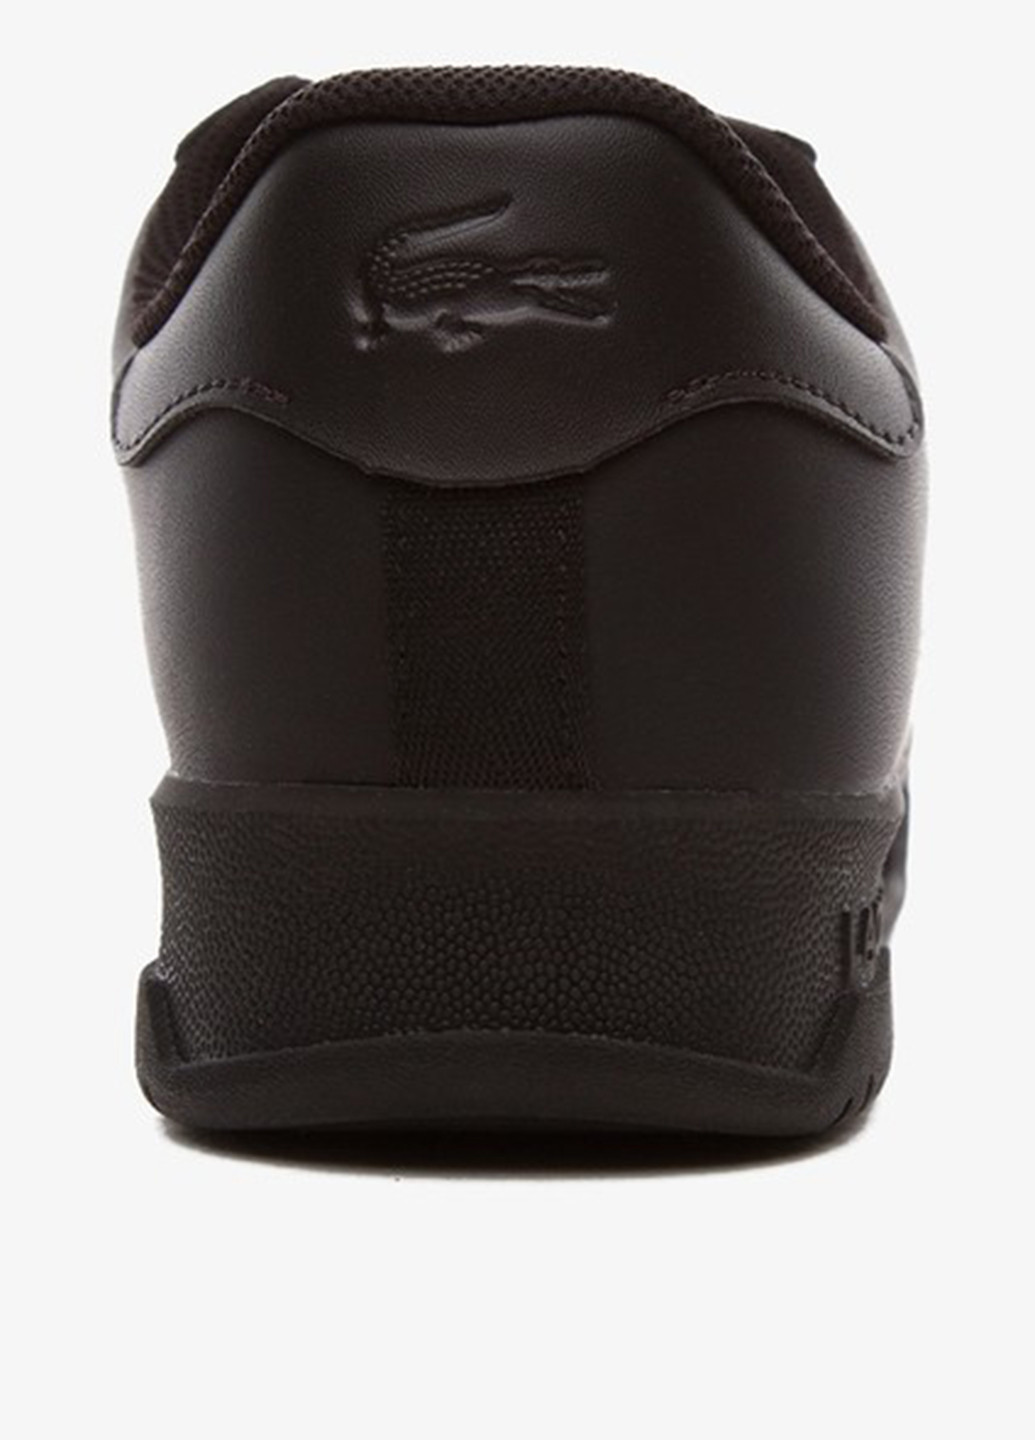 Черные демисезонные кроссовки Lacoste TWIN SERVE